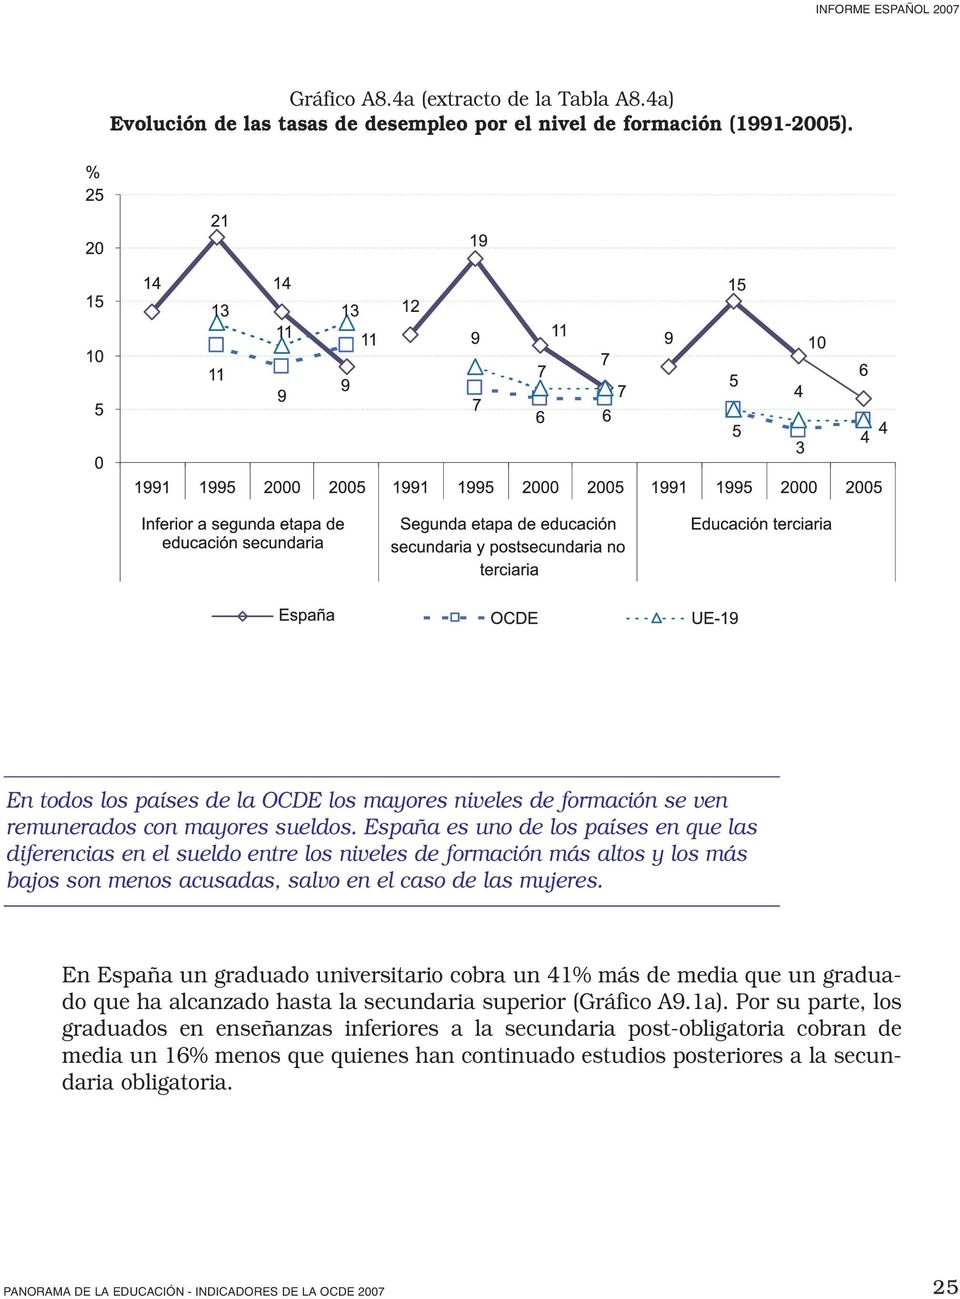 España es uno de los países en que las diferencias en el sueldo entre los niveles de formación más altos y los más bajos son menos acusadas, salvo en el caso de las mujeres.